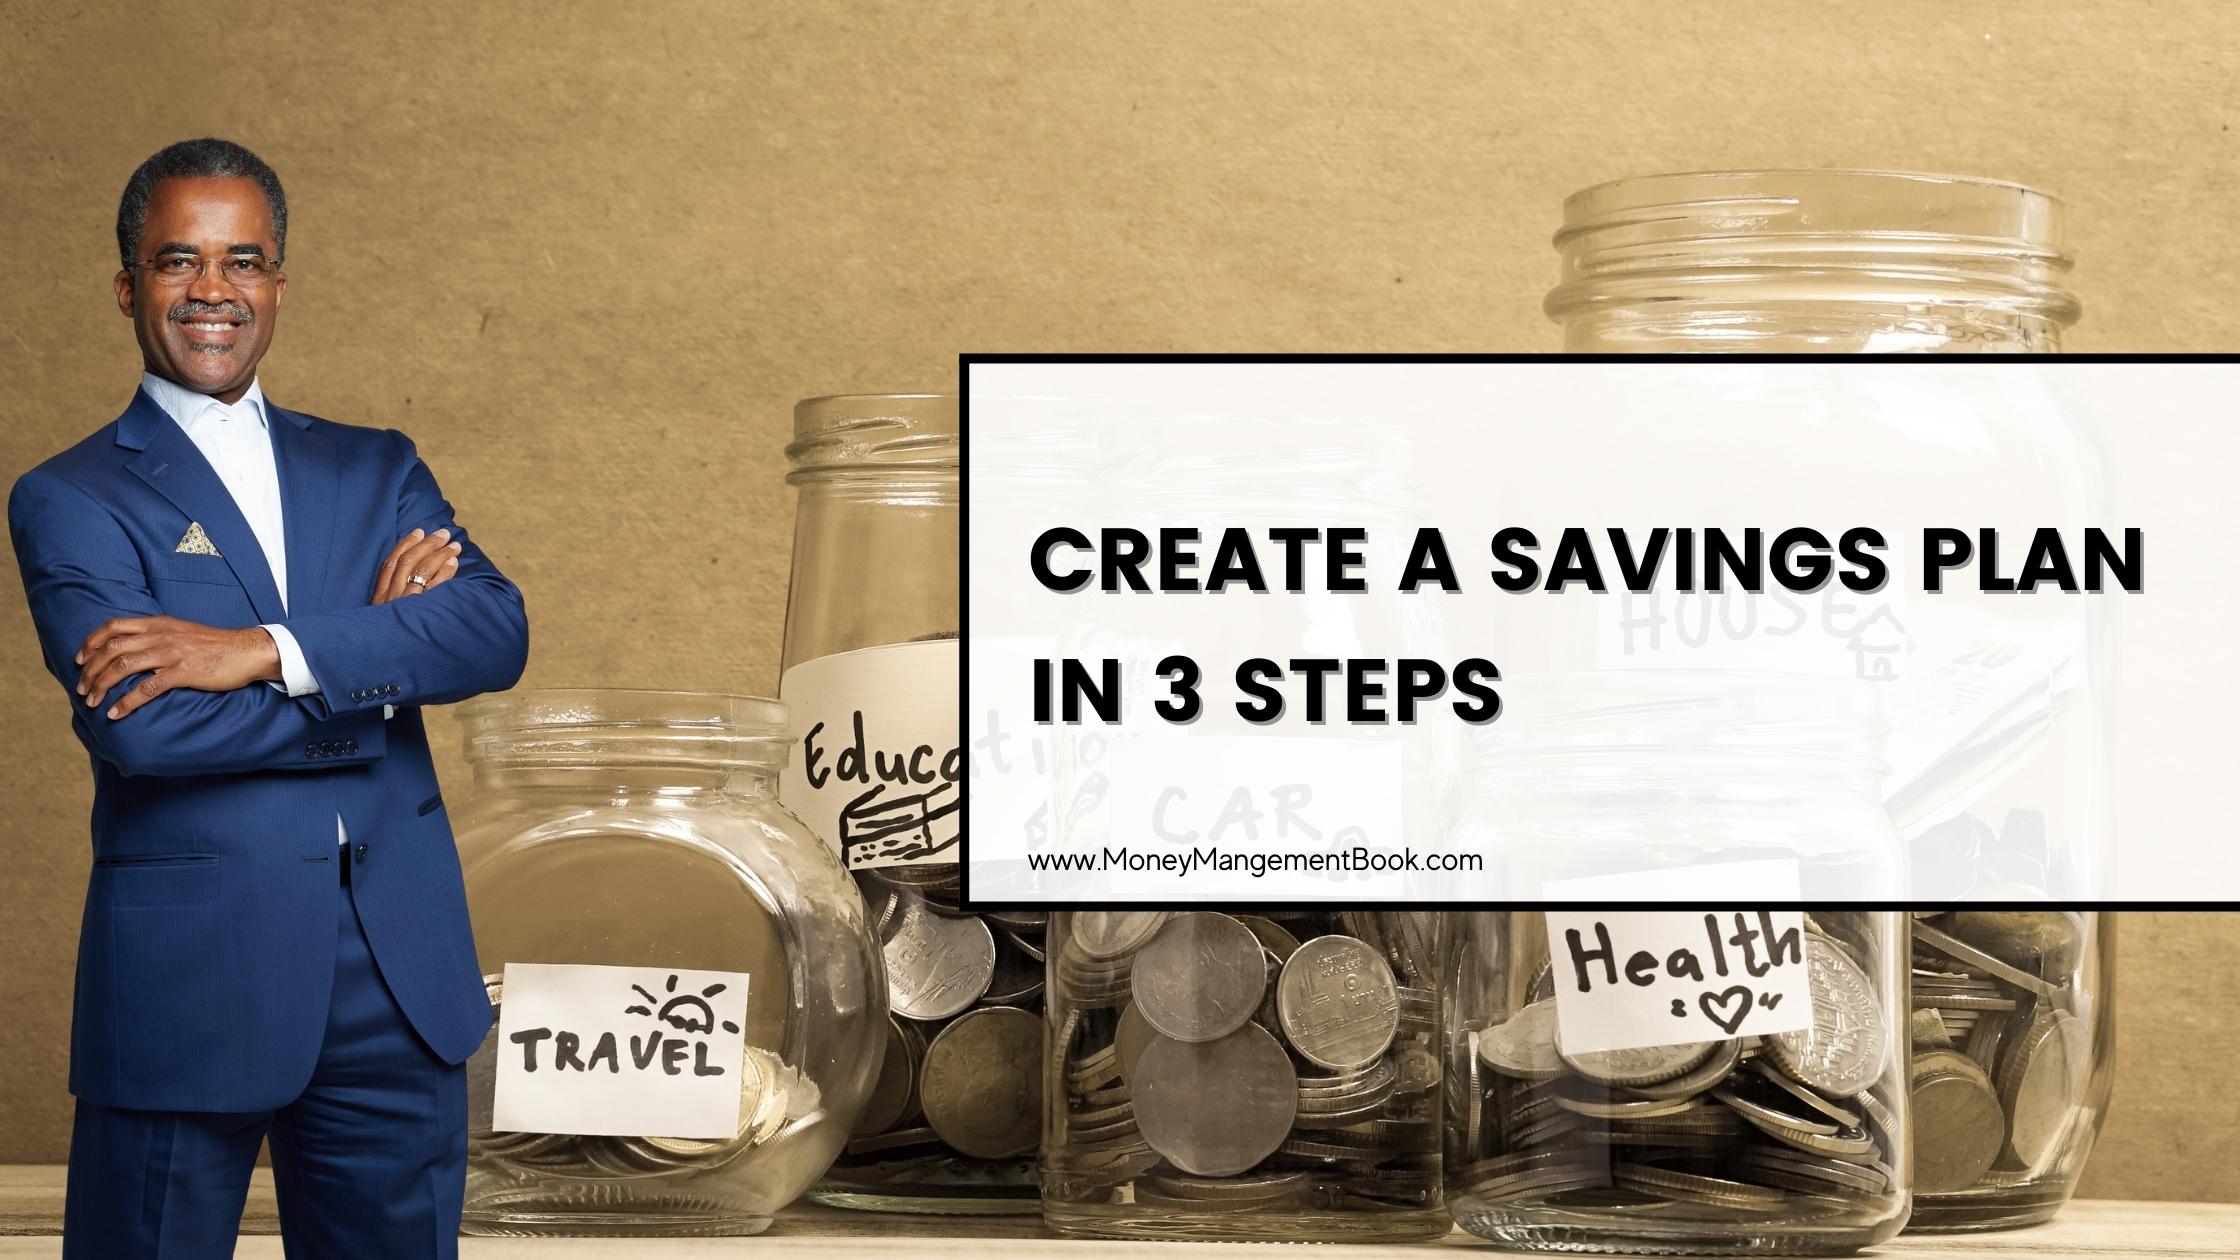 Create a savings plan in 3 steps blog post